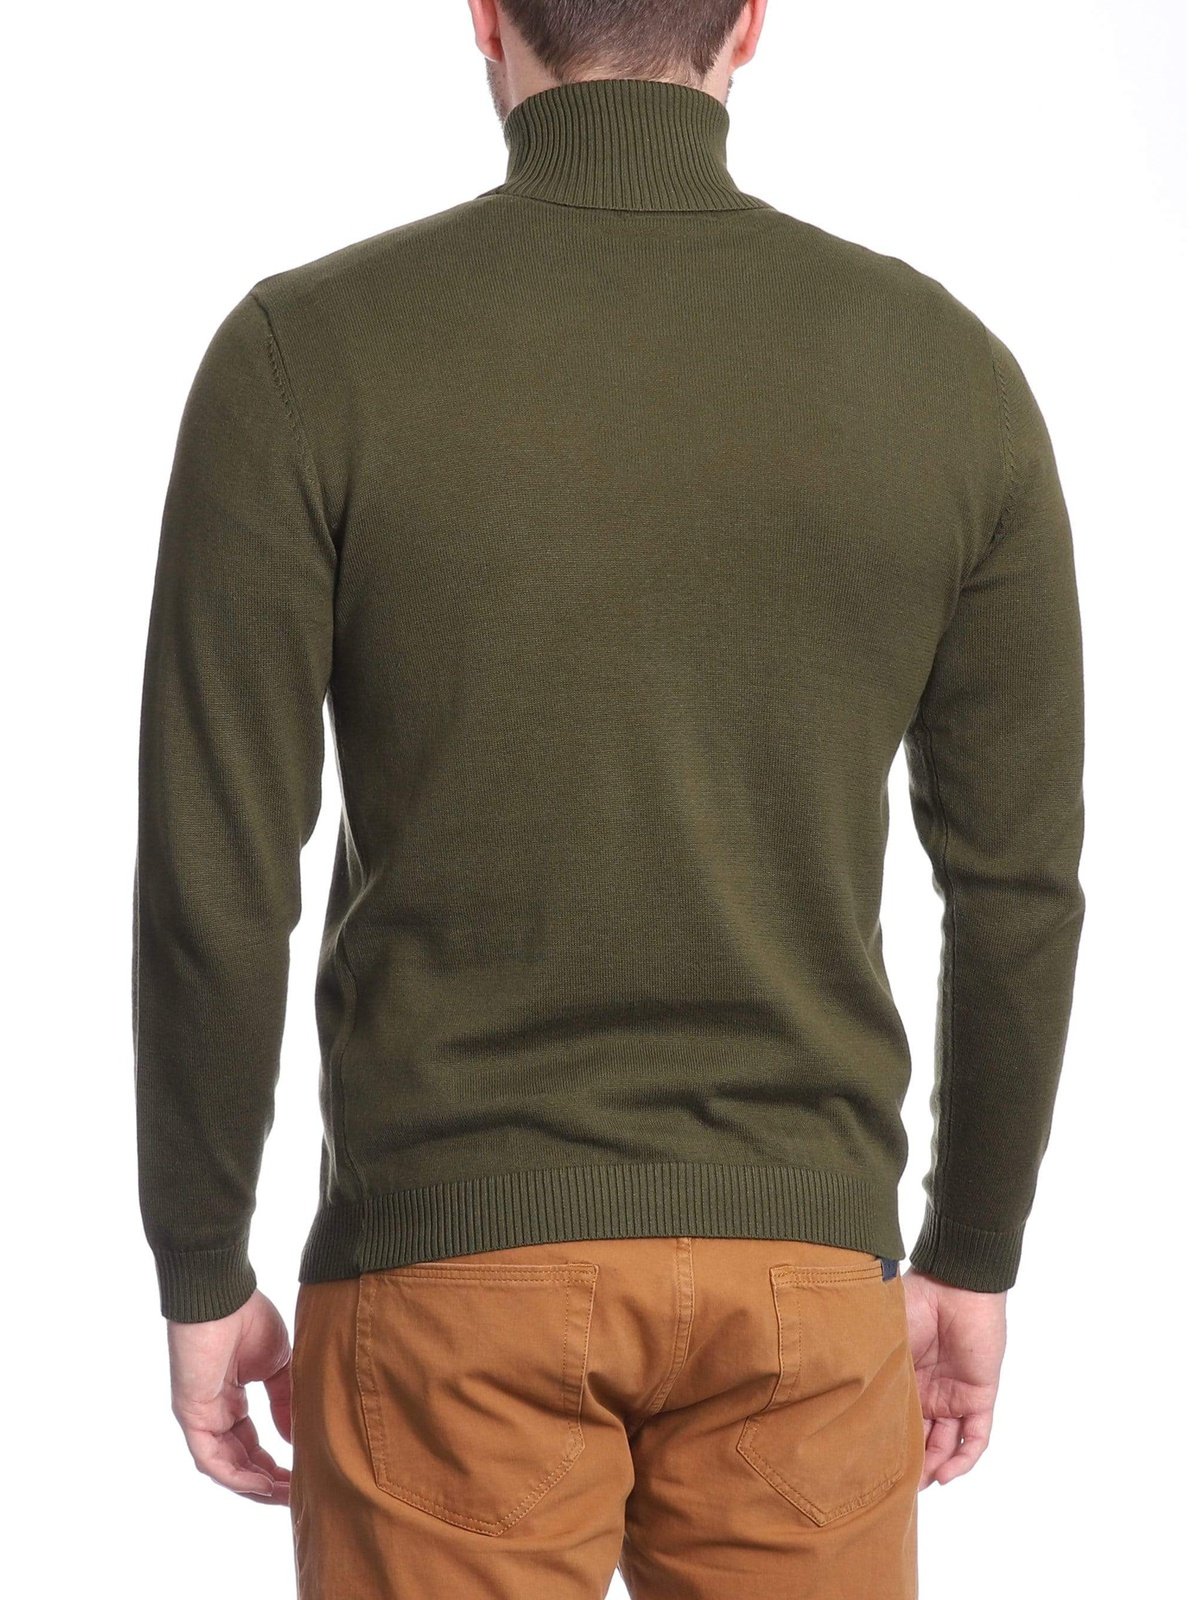 Arthur Black Default Category Migrated Arthur Black Men's Solid Olive Green Pullover Cotton Blend Turtleneck Sweater